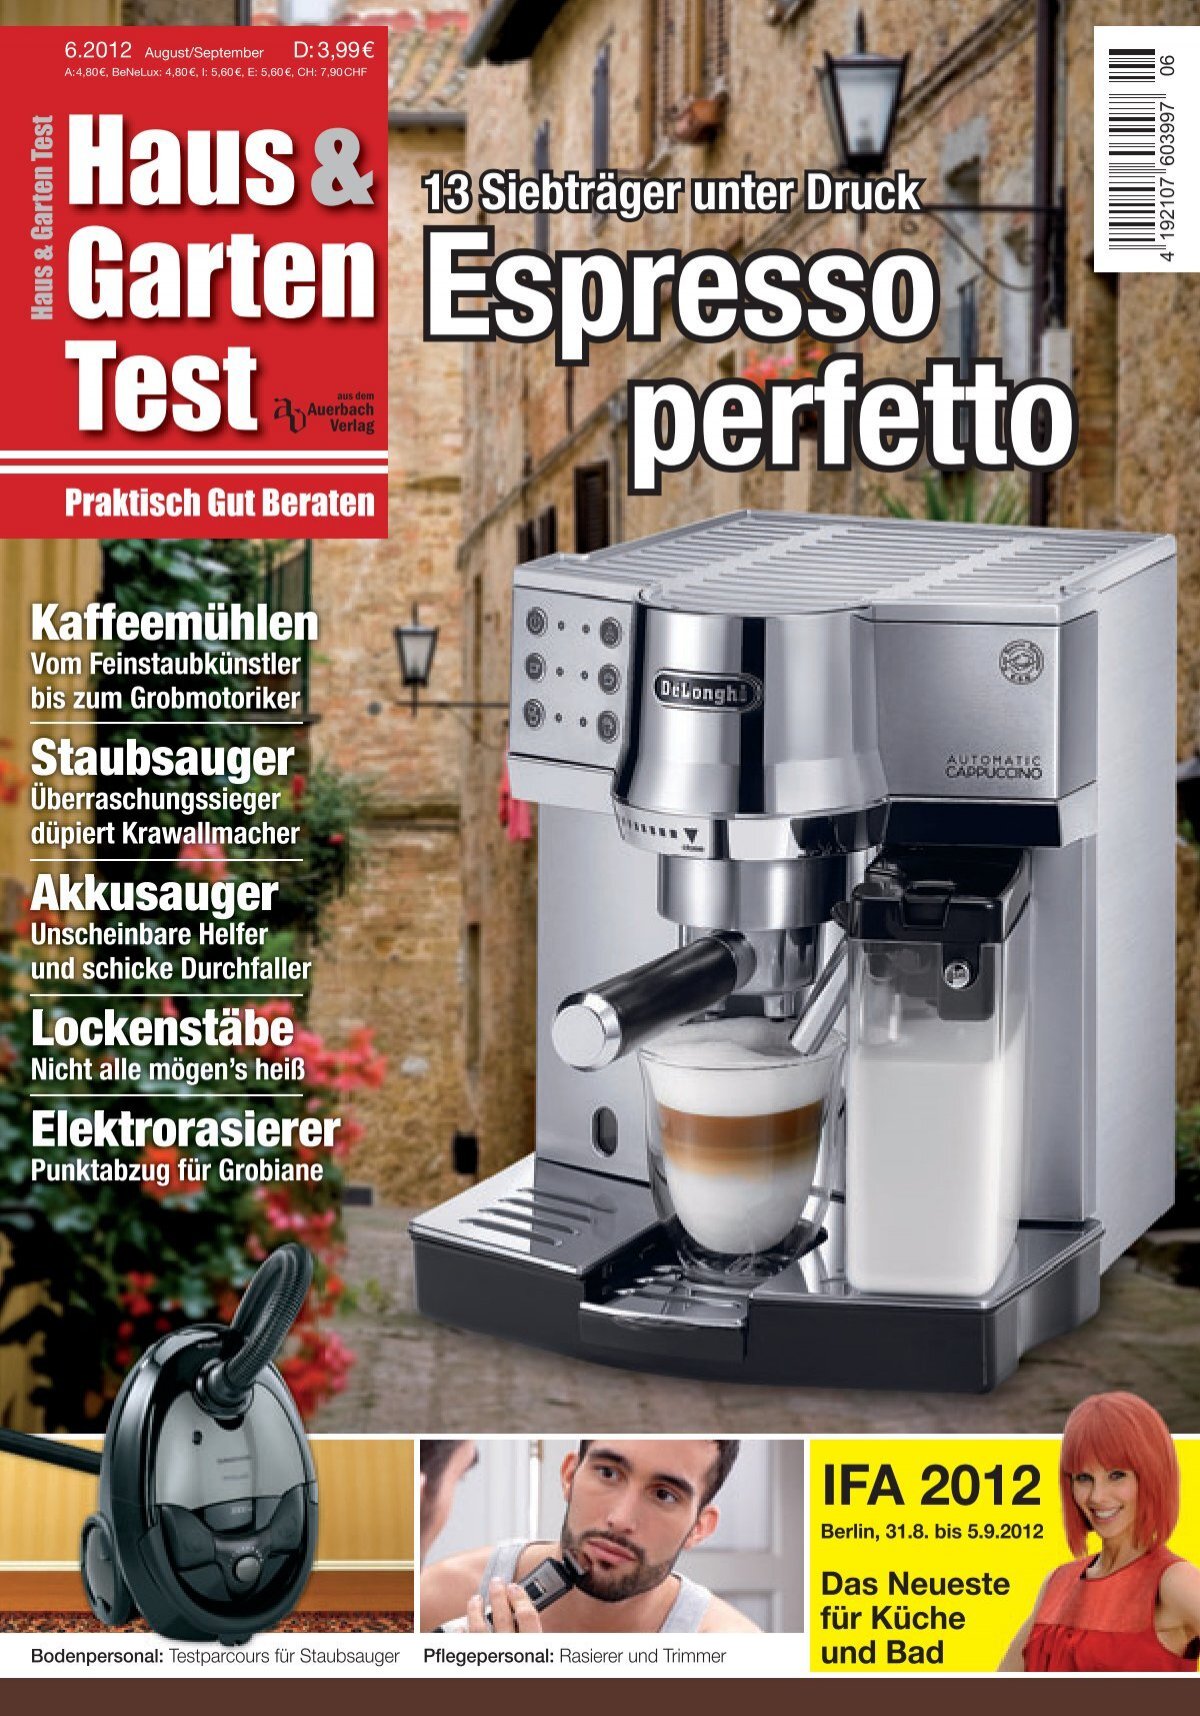 Test & Espresso Garten (Vorschau) perfetto Haus